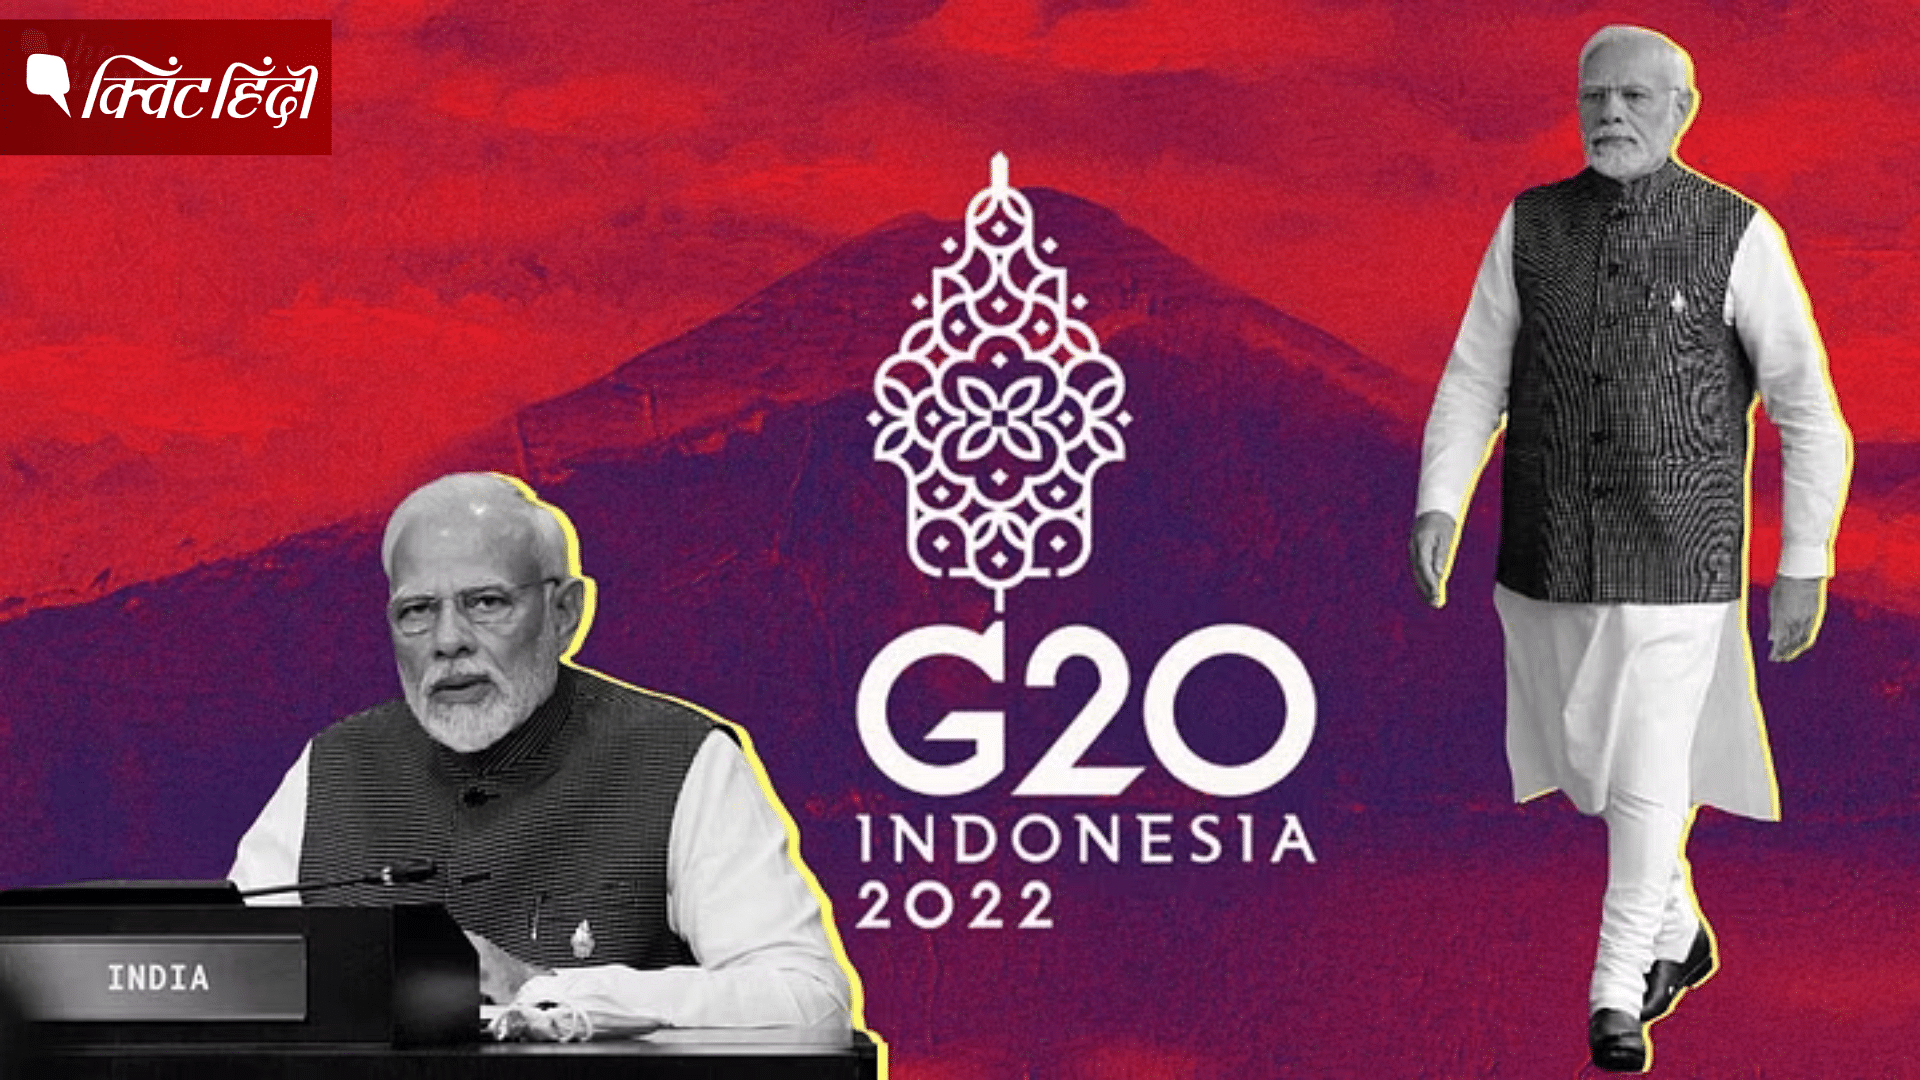 <div class="paragraphs"><p>जी-20 समिट के दौरान पीएम मोदी ने बाली में तीन दिन गुजारे</p></div>